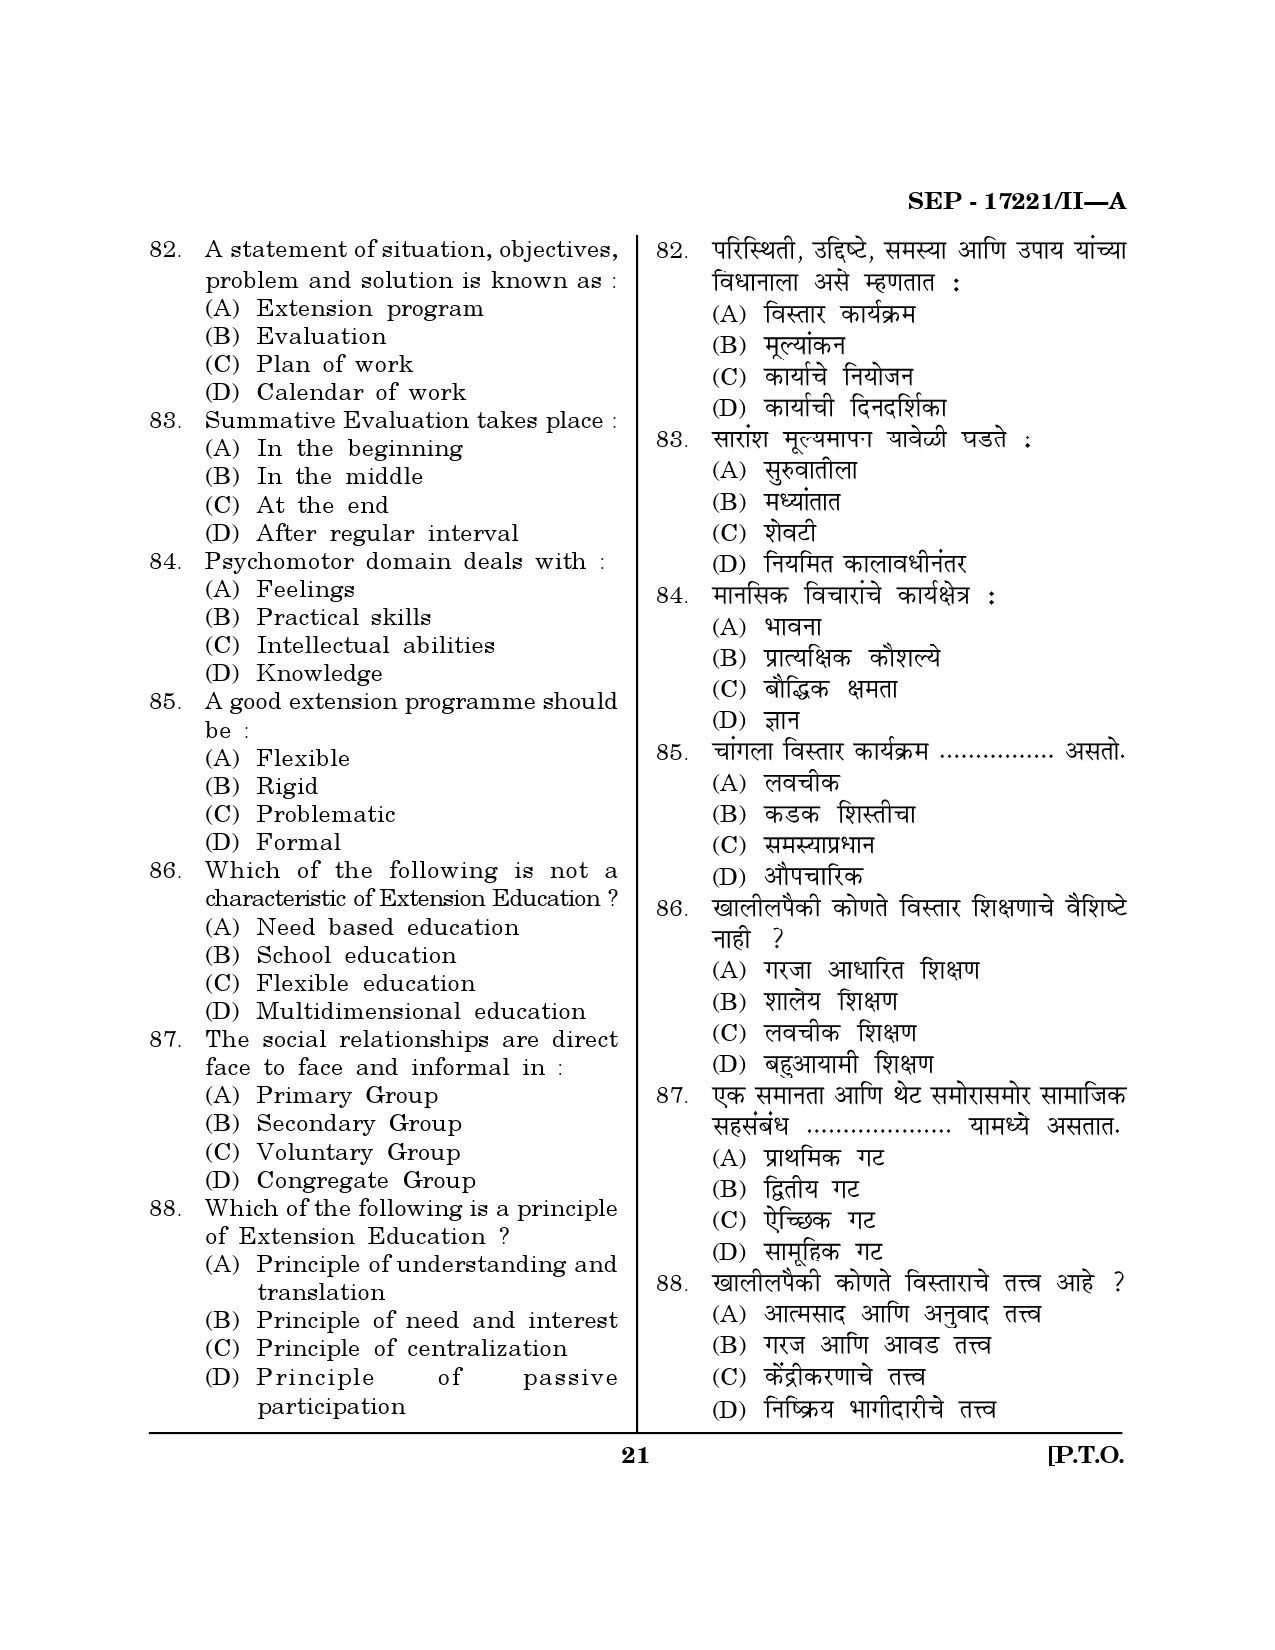 Maharashtra SET Home Science Exam Question Paper September 2021 20